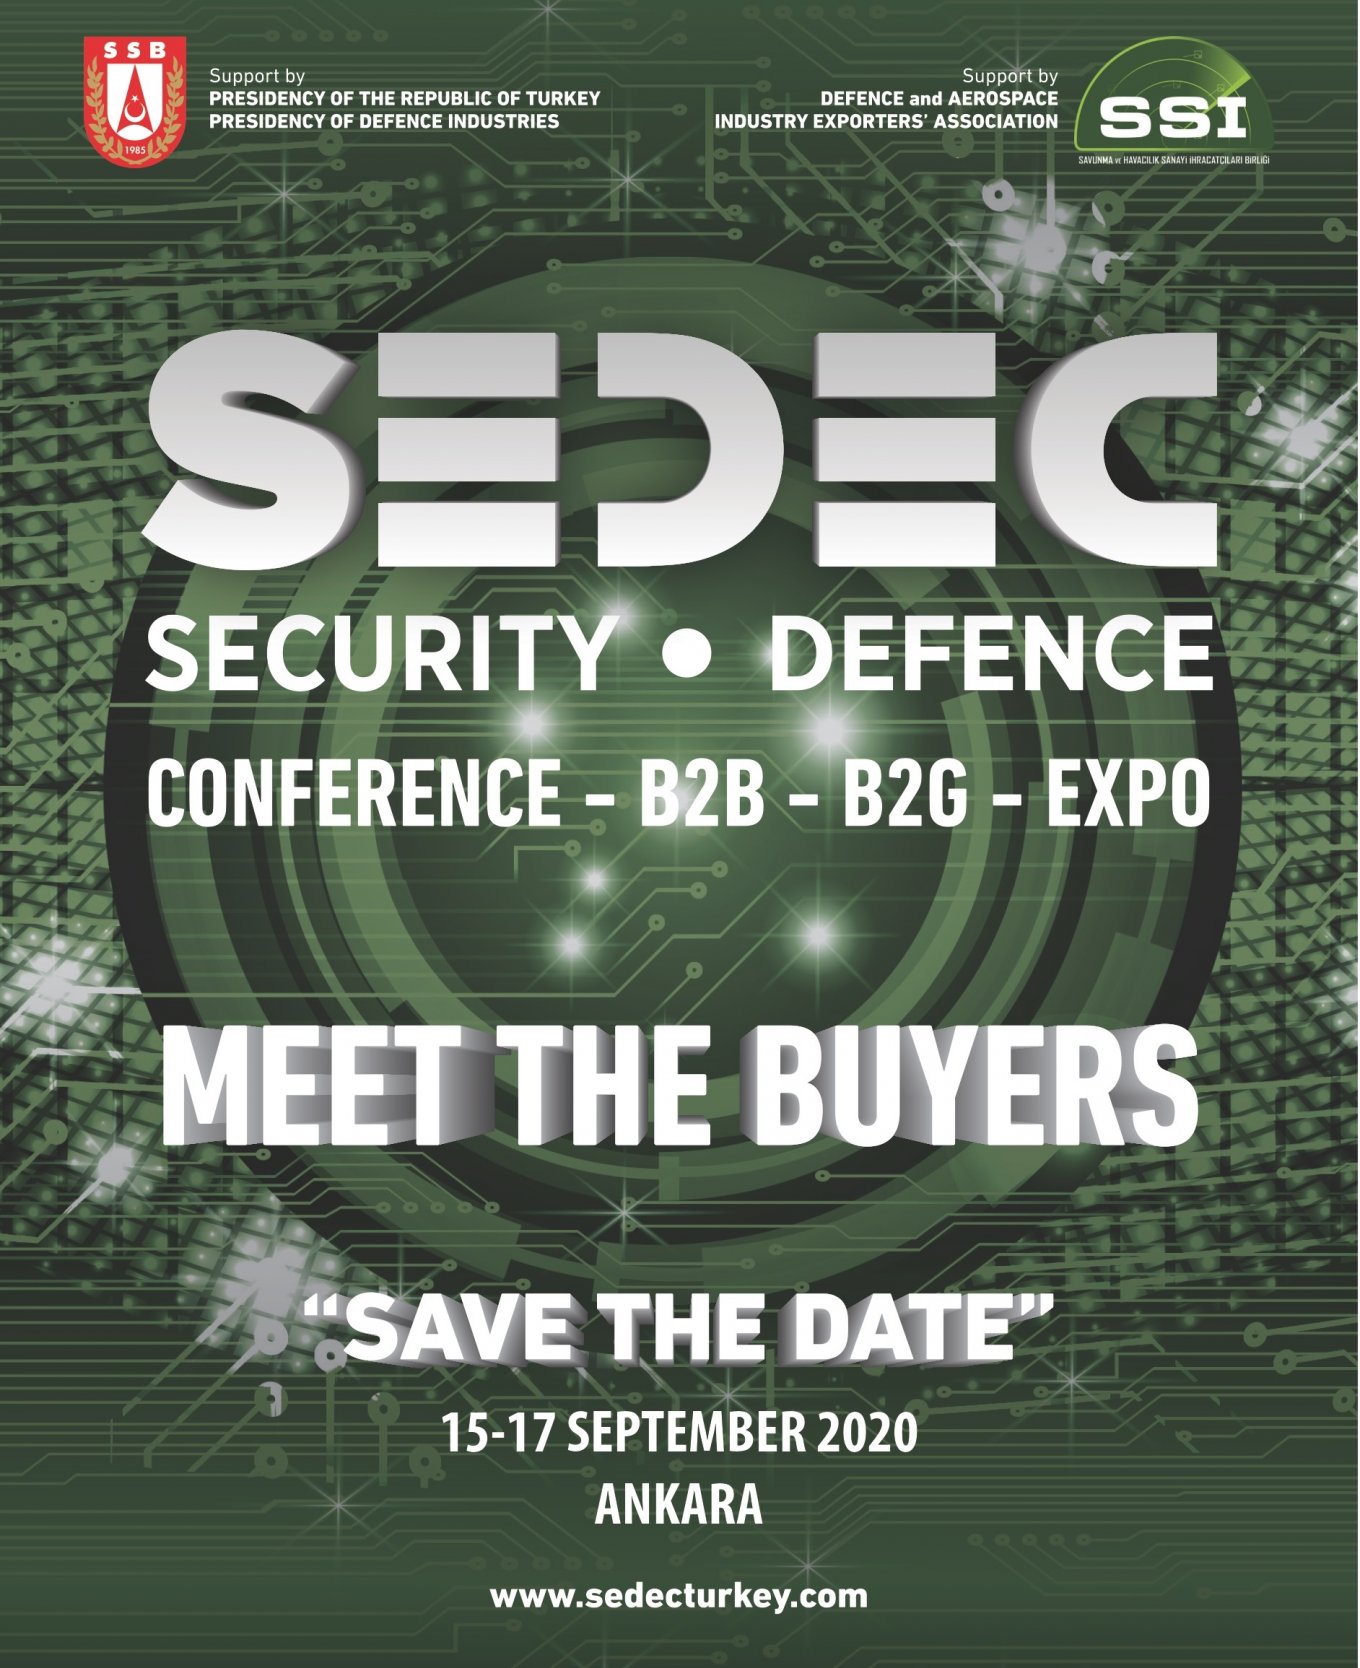 SEDEC, Defense Express